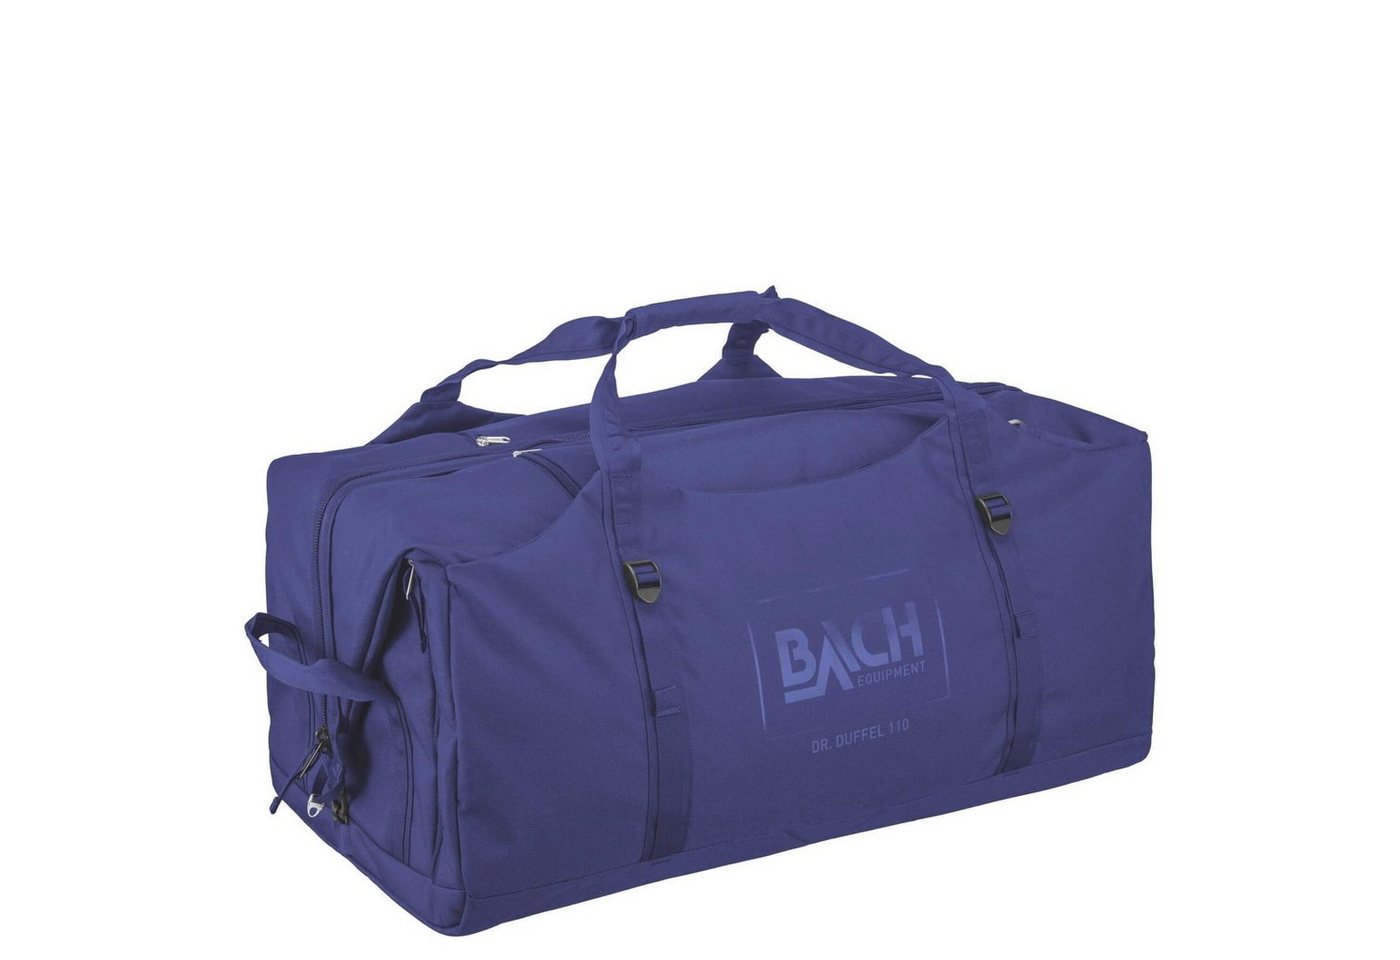 Bach Sporttasche Dr. Duffel 110 - Reisetasche von Bach